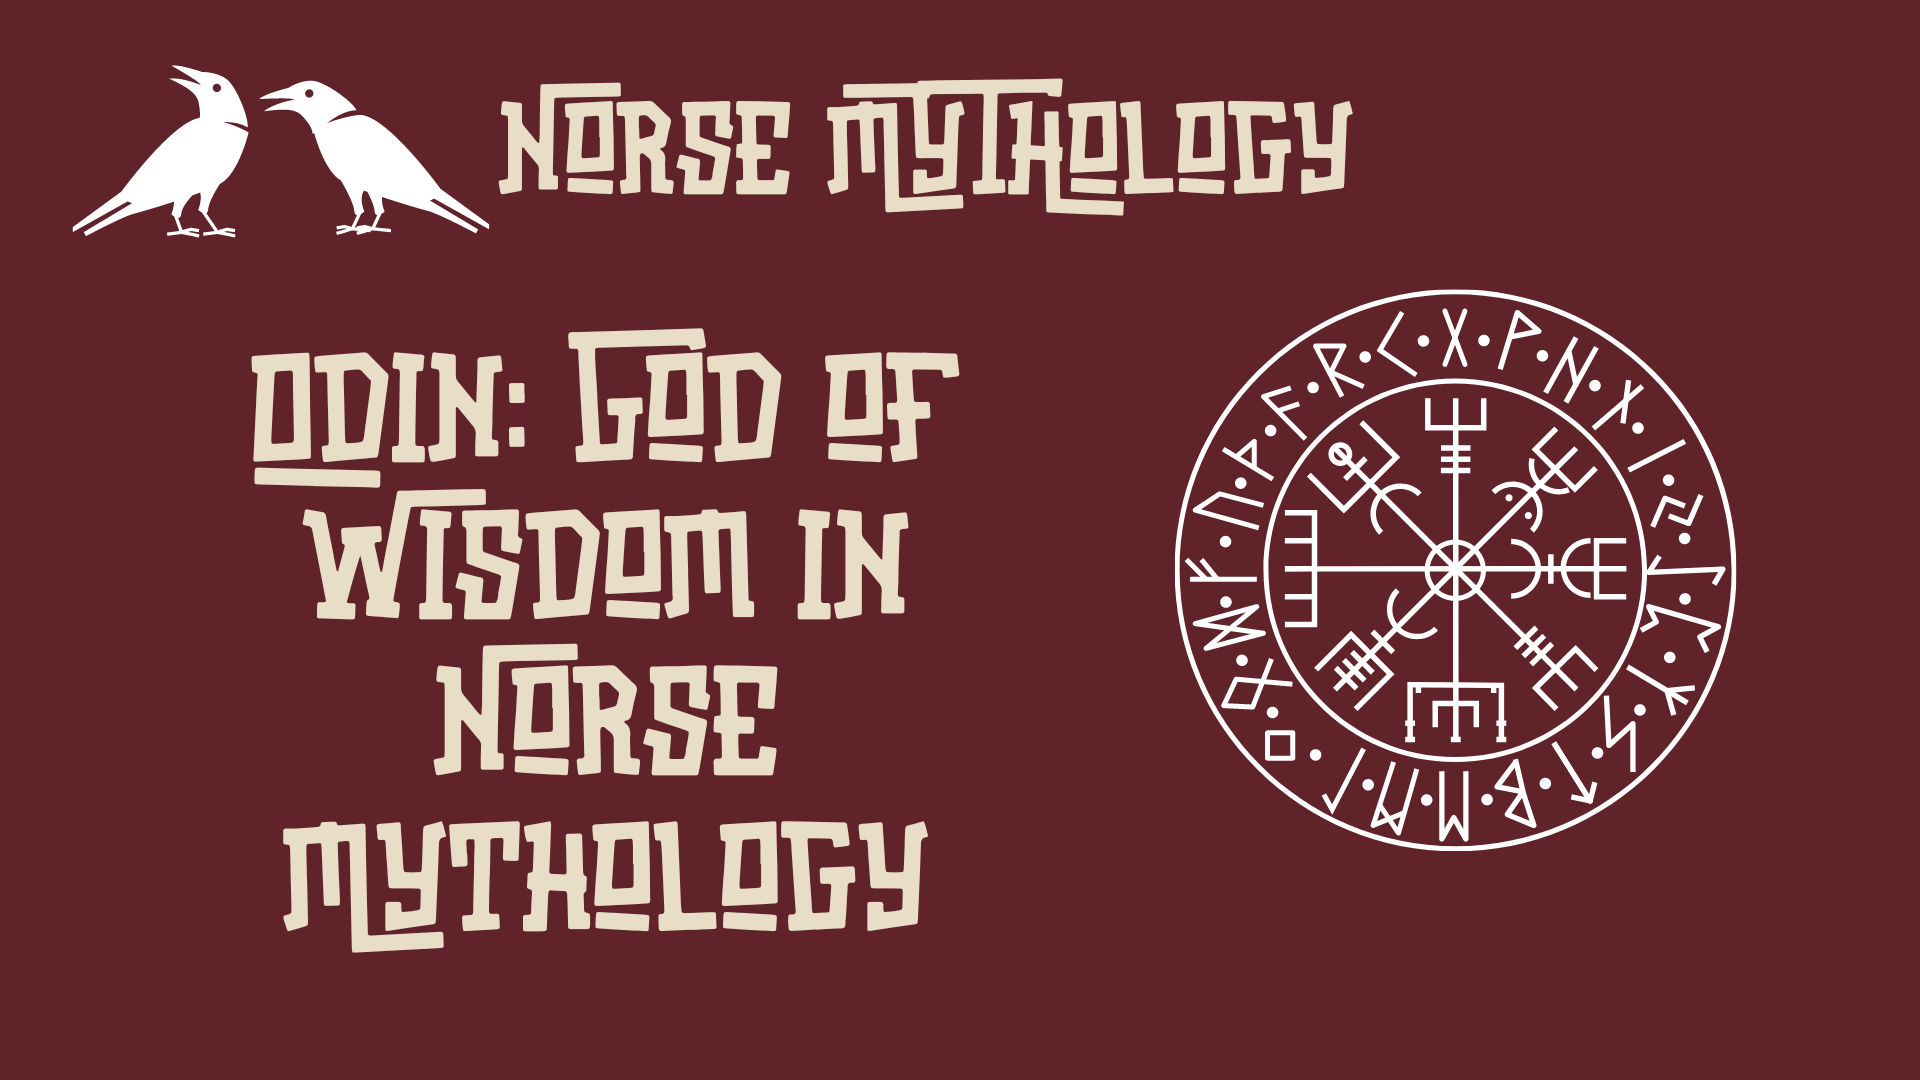 Odin: God of Wisdom in Norse Mythology